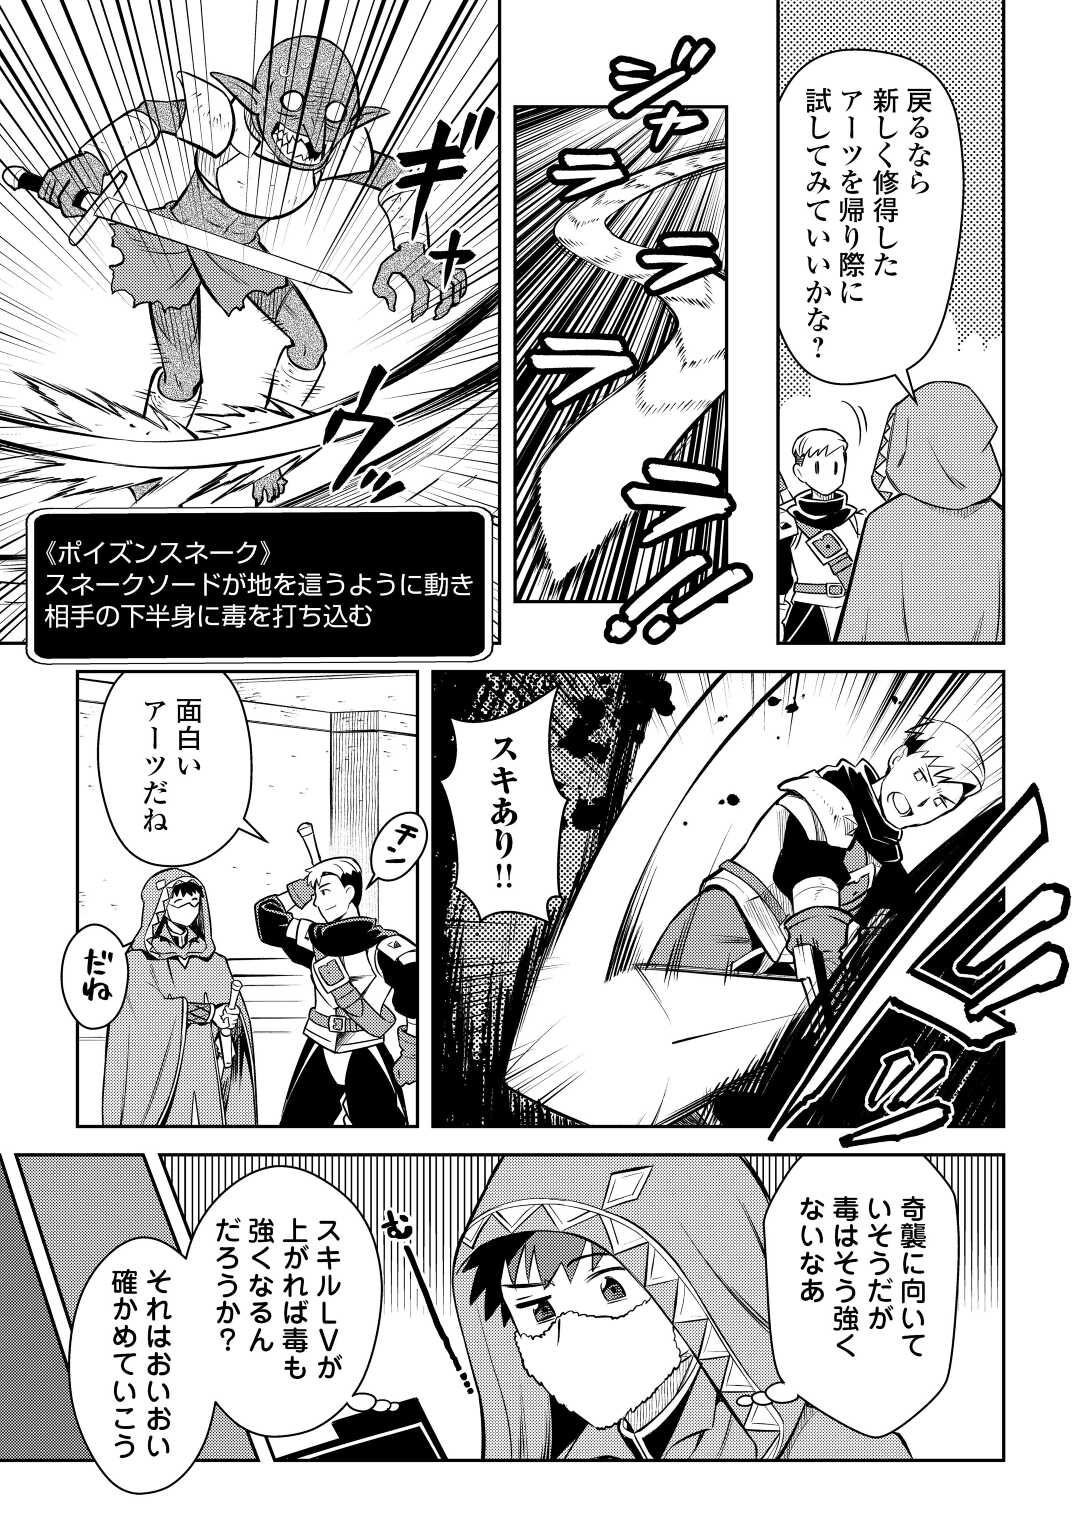 Toaru Ossan no VRMMO Katsudouki - Chapter 71 - Page 21